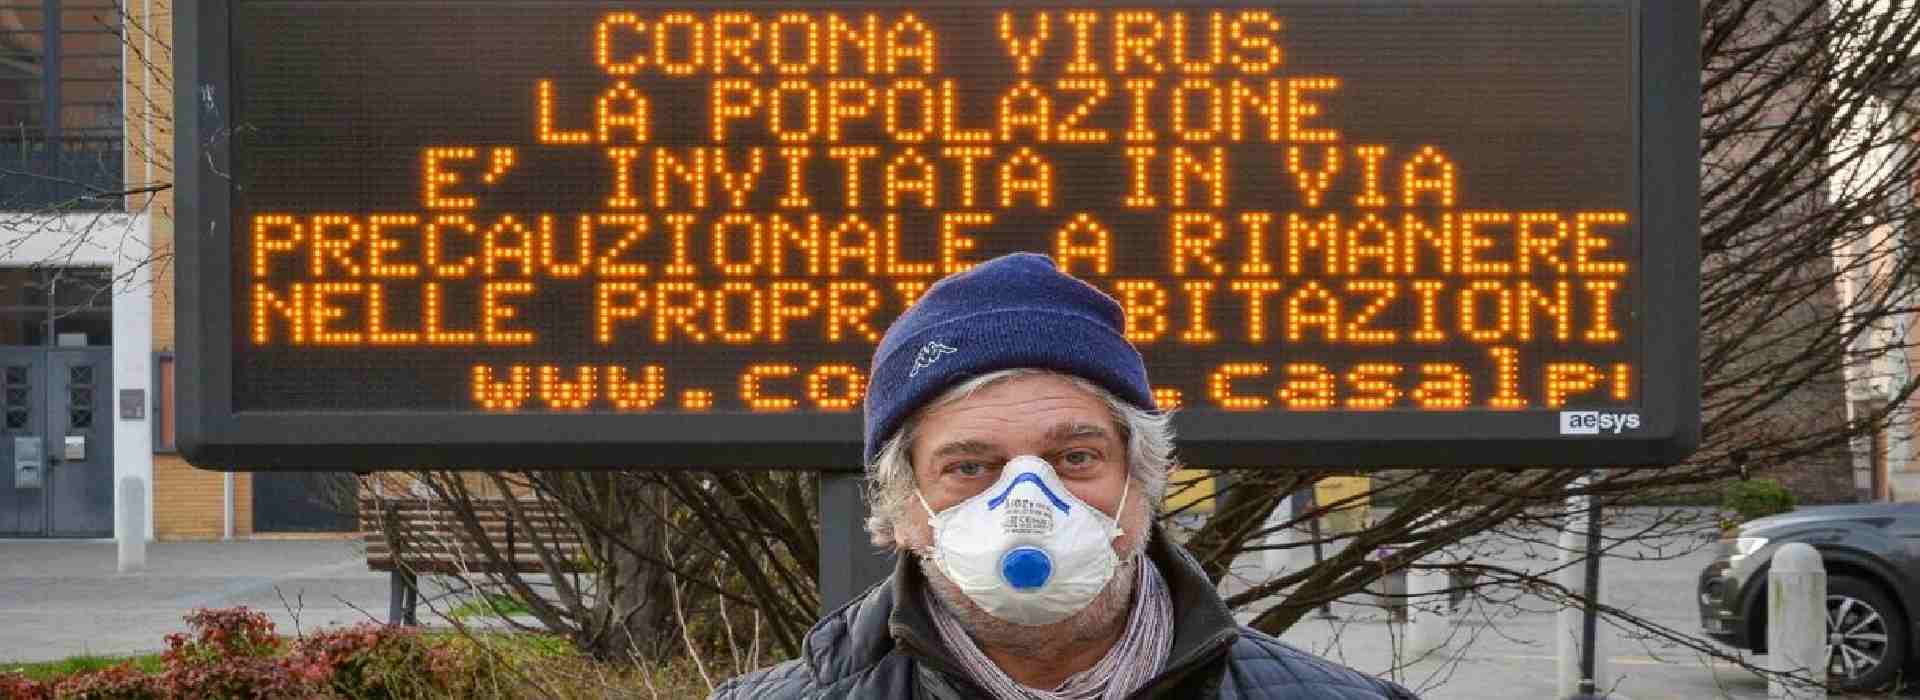 Coronavirus: "Un polmone sano può ammalarsi. Il numero dei malati solo punta dell'iceberg"